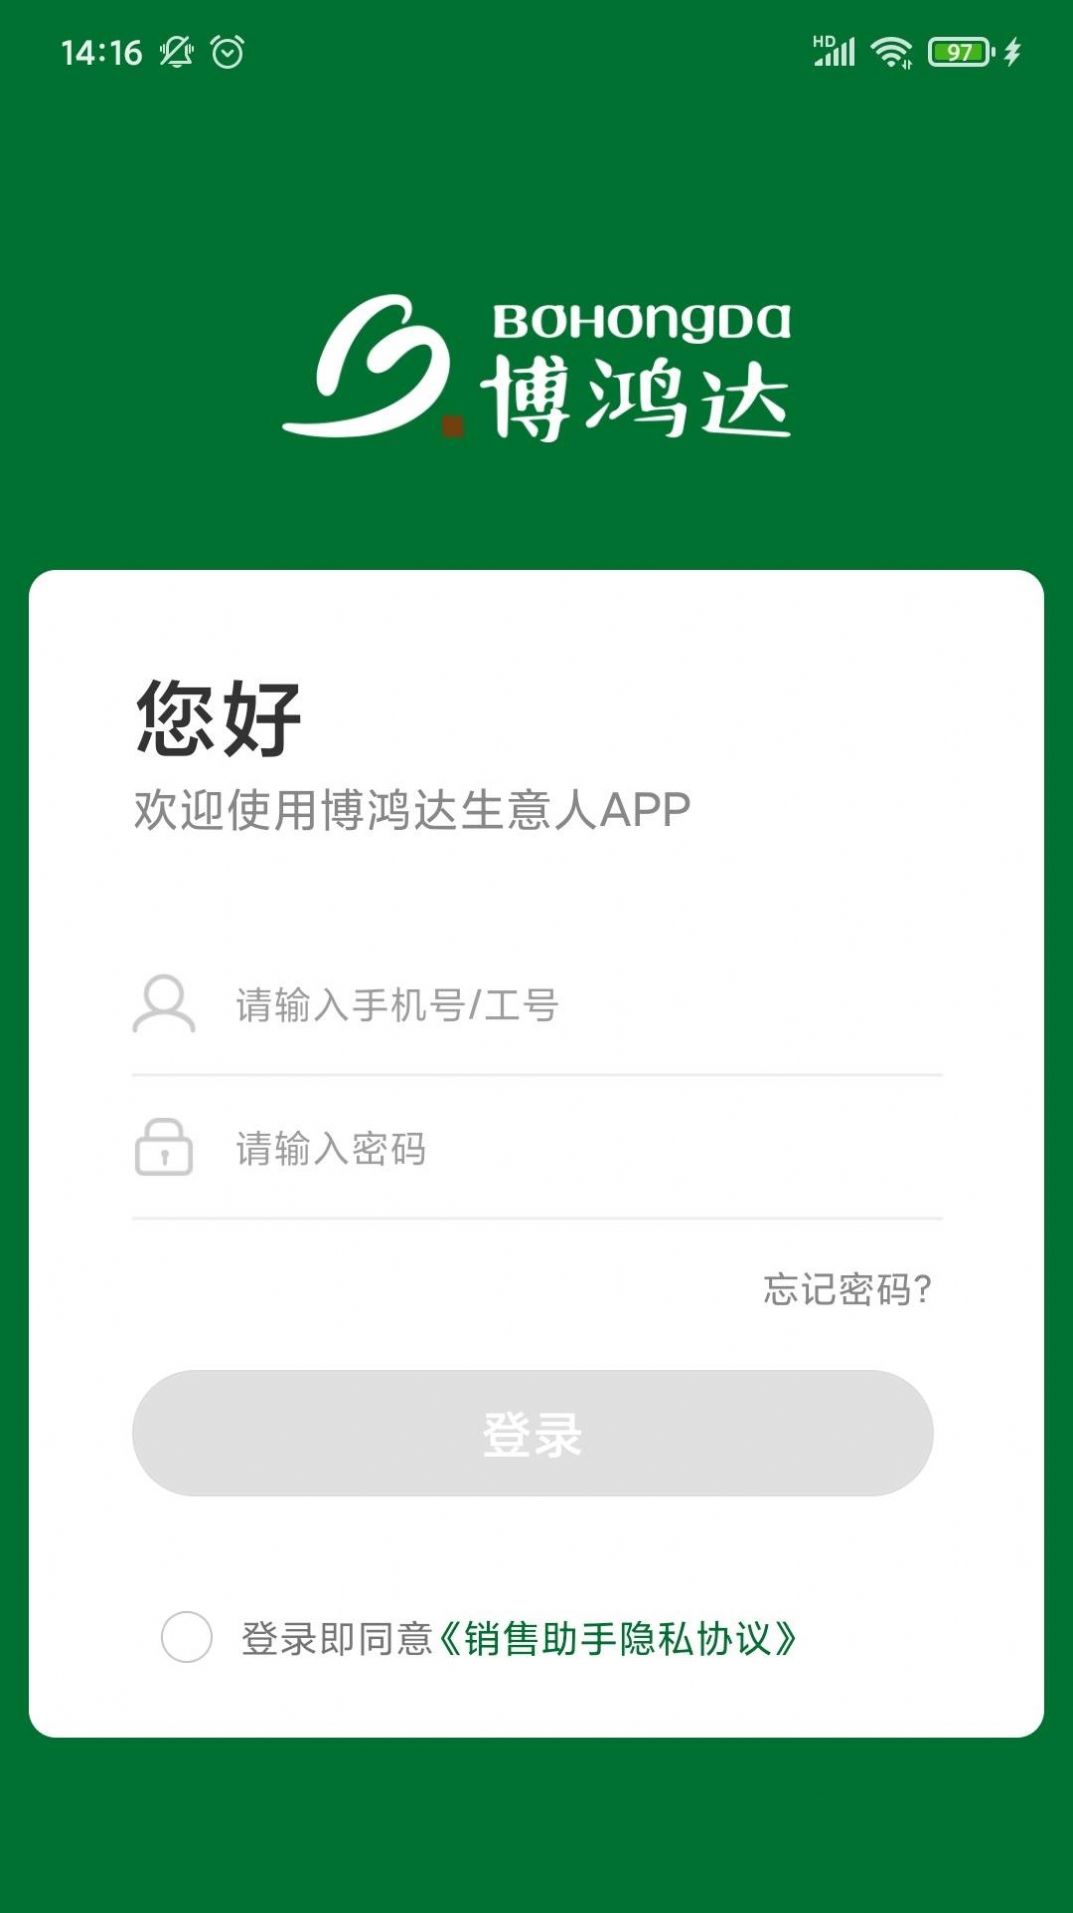 博鸿达销售助手下载官方app